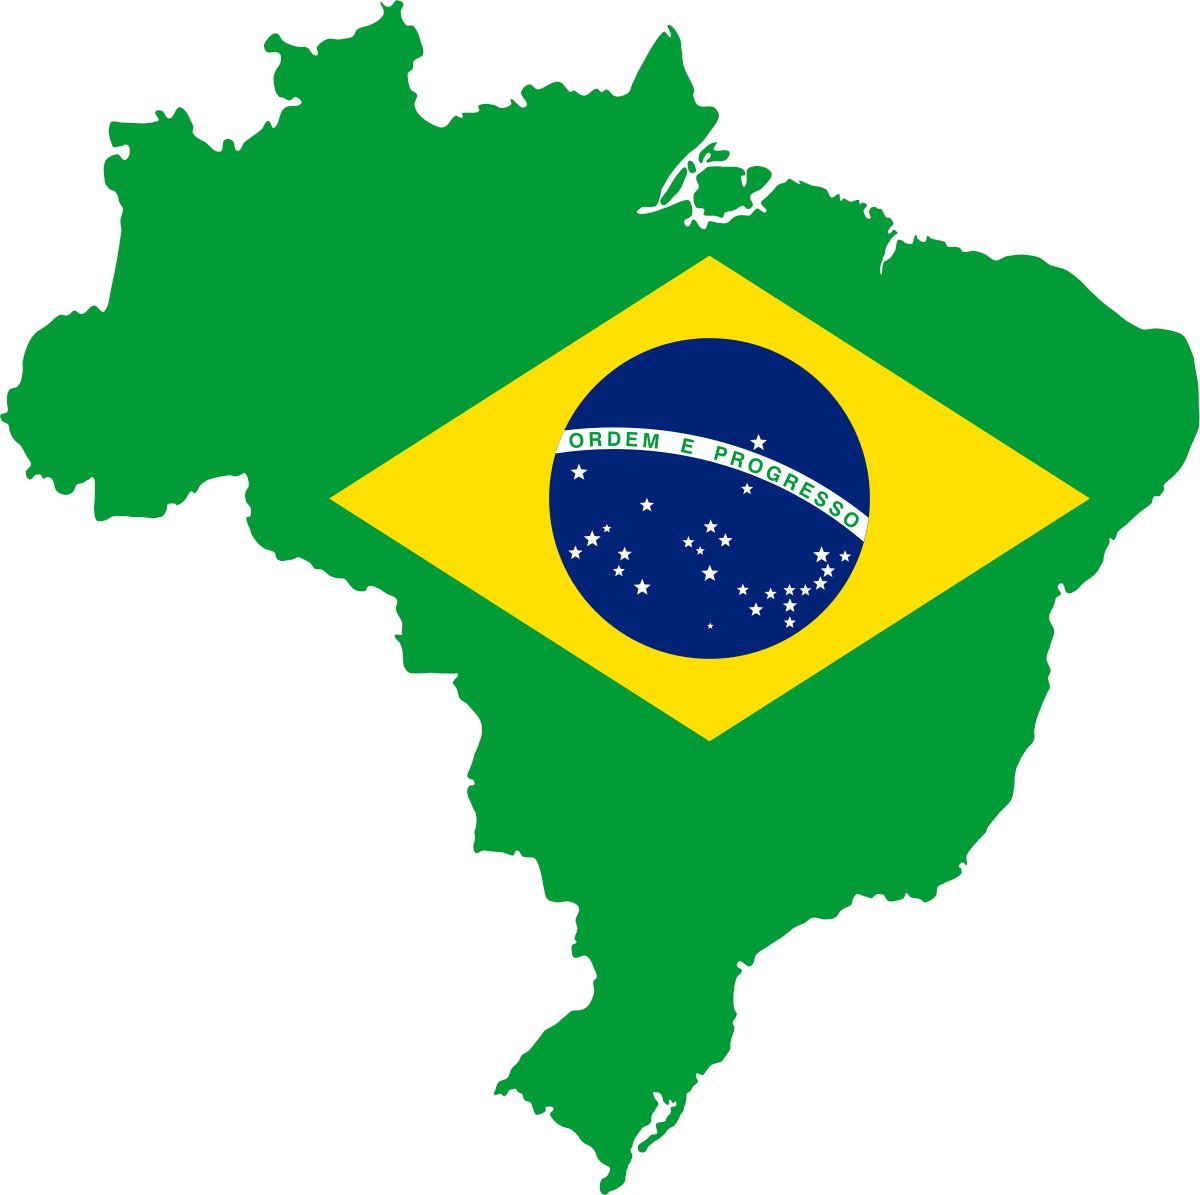 Президент Бразилии подписал законопроект, регулирующий использование криптовалют в качестве платежного средства и инвестиционного актива в стране. Согласно тексту законопроекта, виртуальный актив — это «цифровое представление стоимости, которое можно… t2p.pw/Sz2F6Ngopz